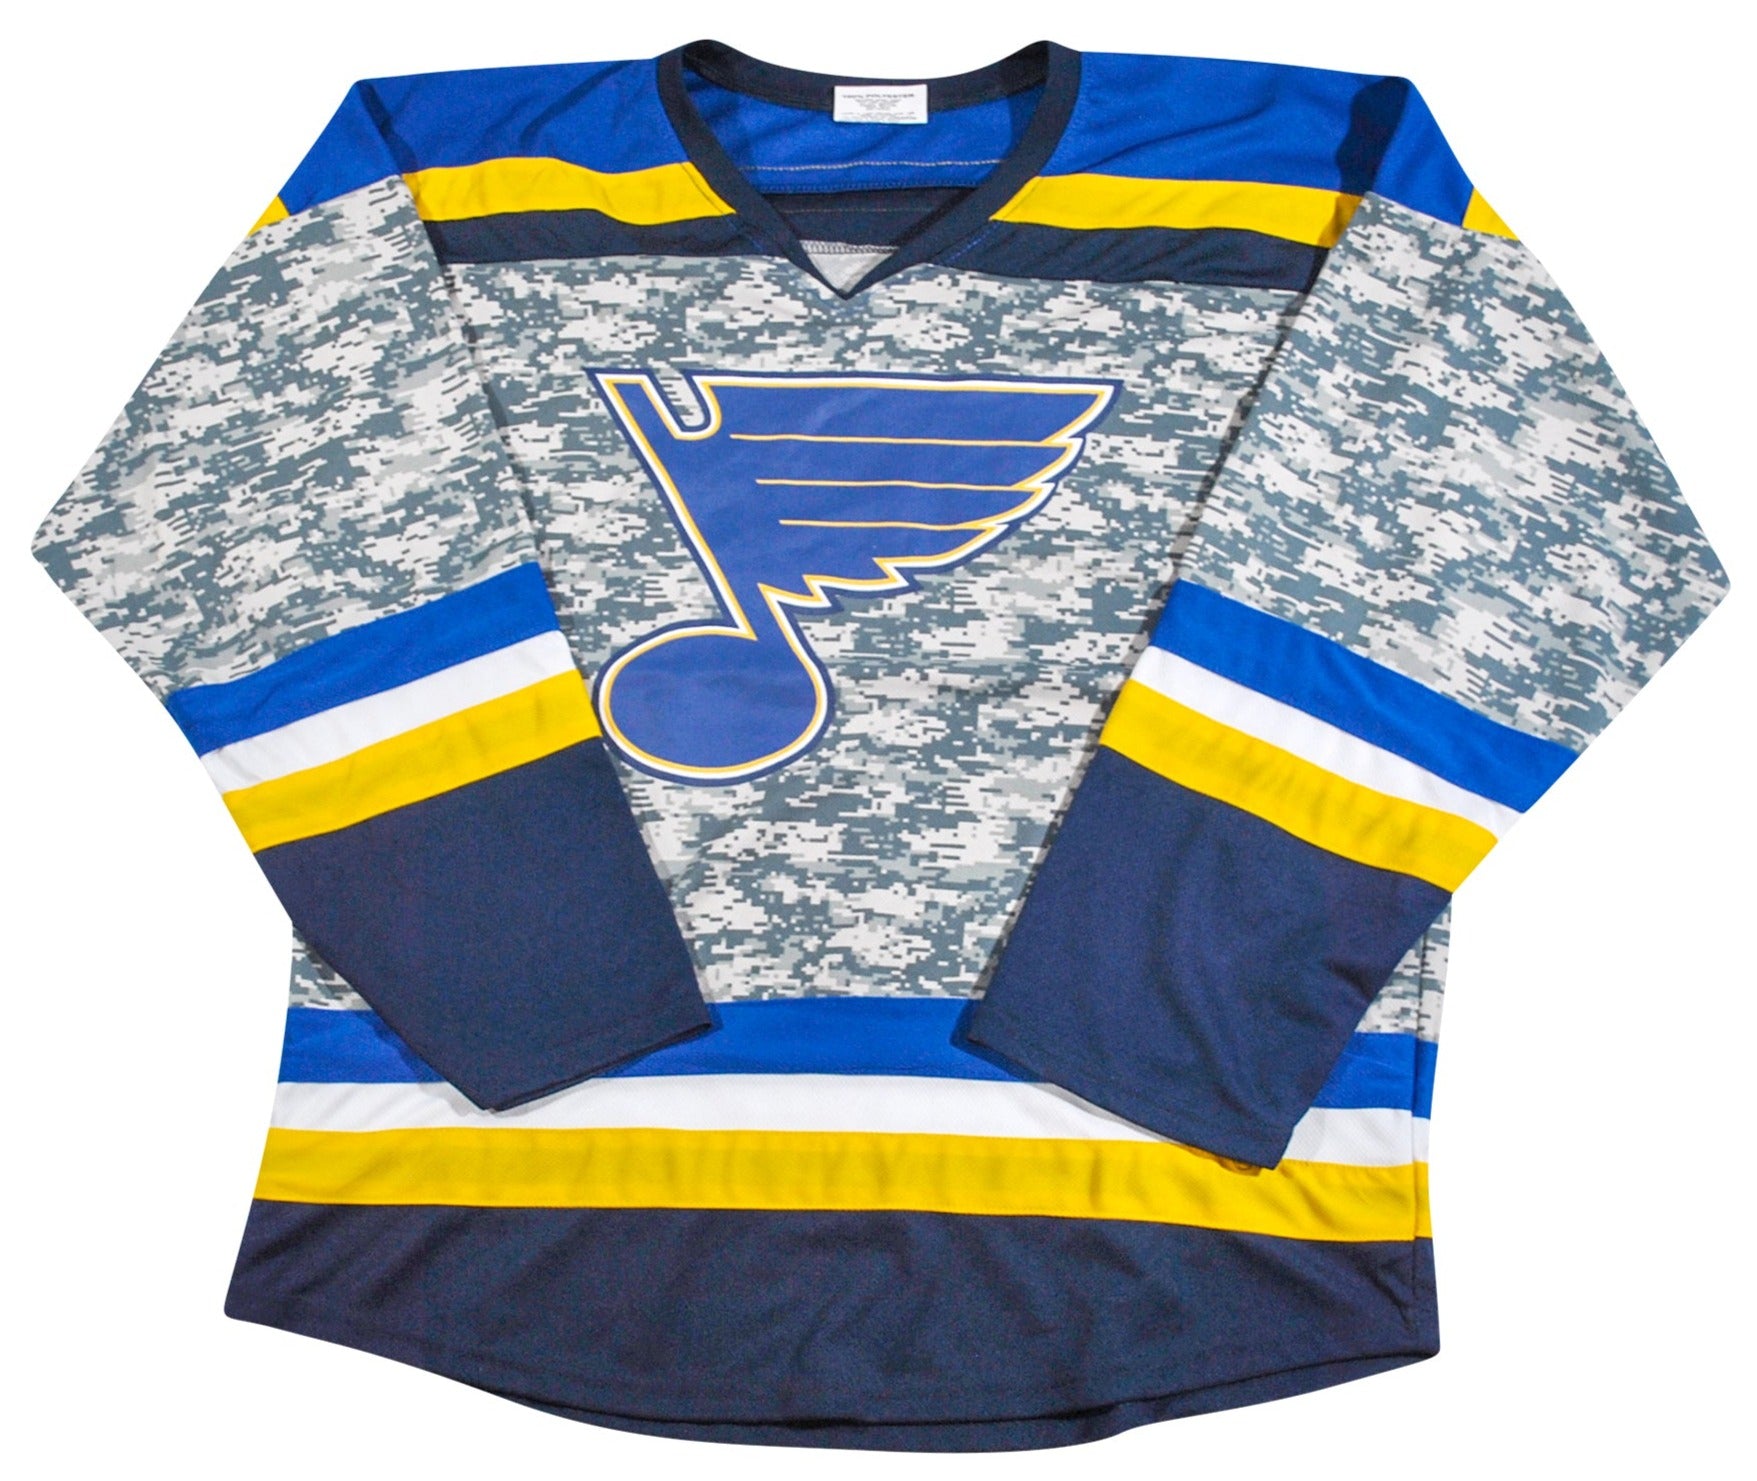 St. Louis Blues jerseys